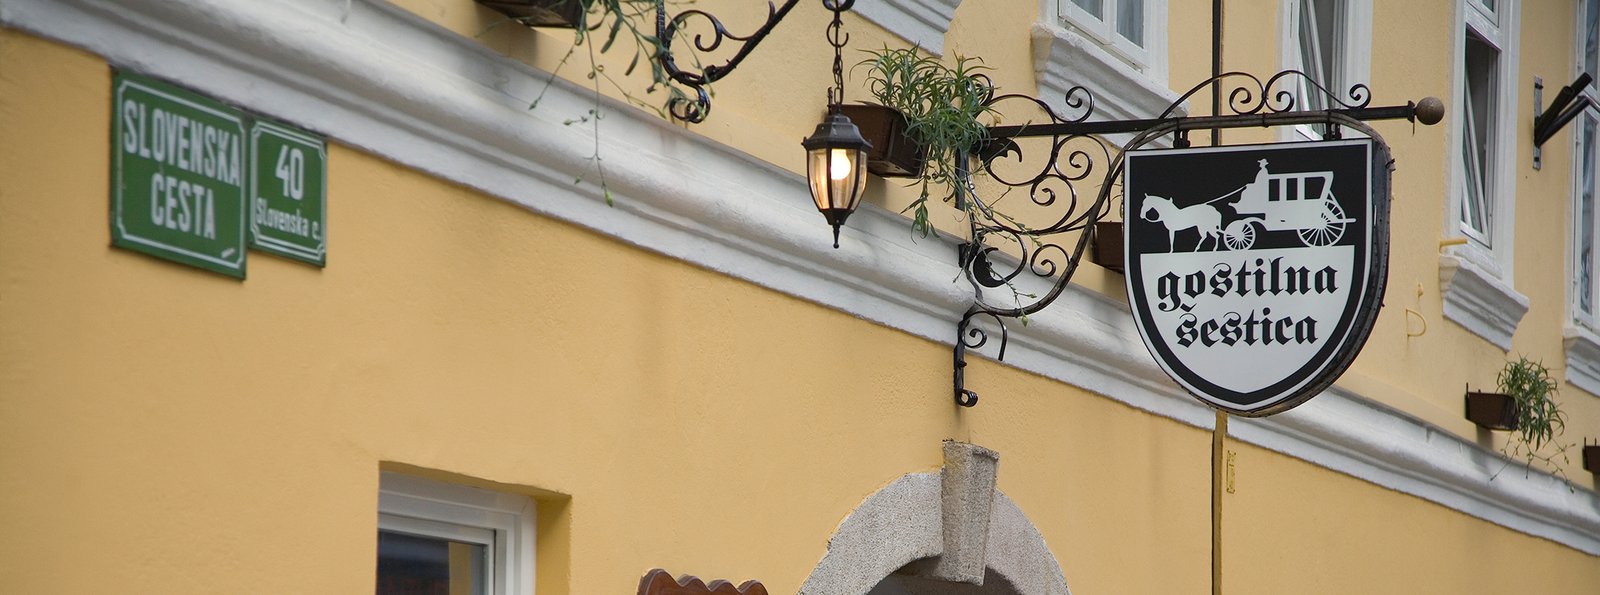 Gostilna Sestica, the oldest Inn in Ljubljana, Slovenia.